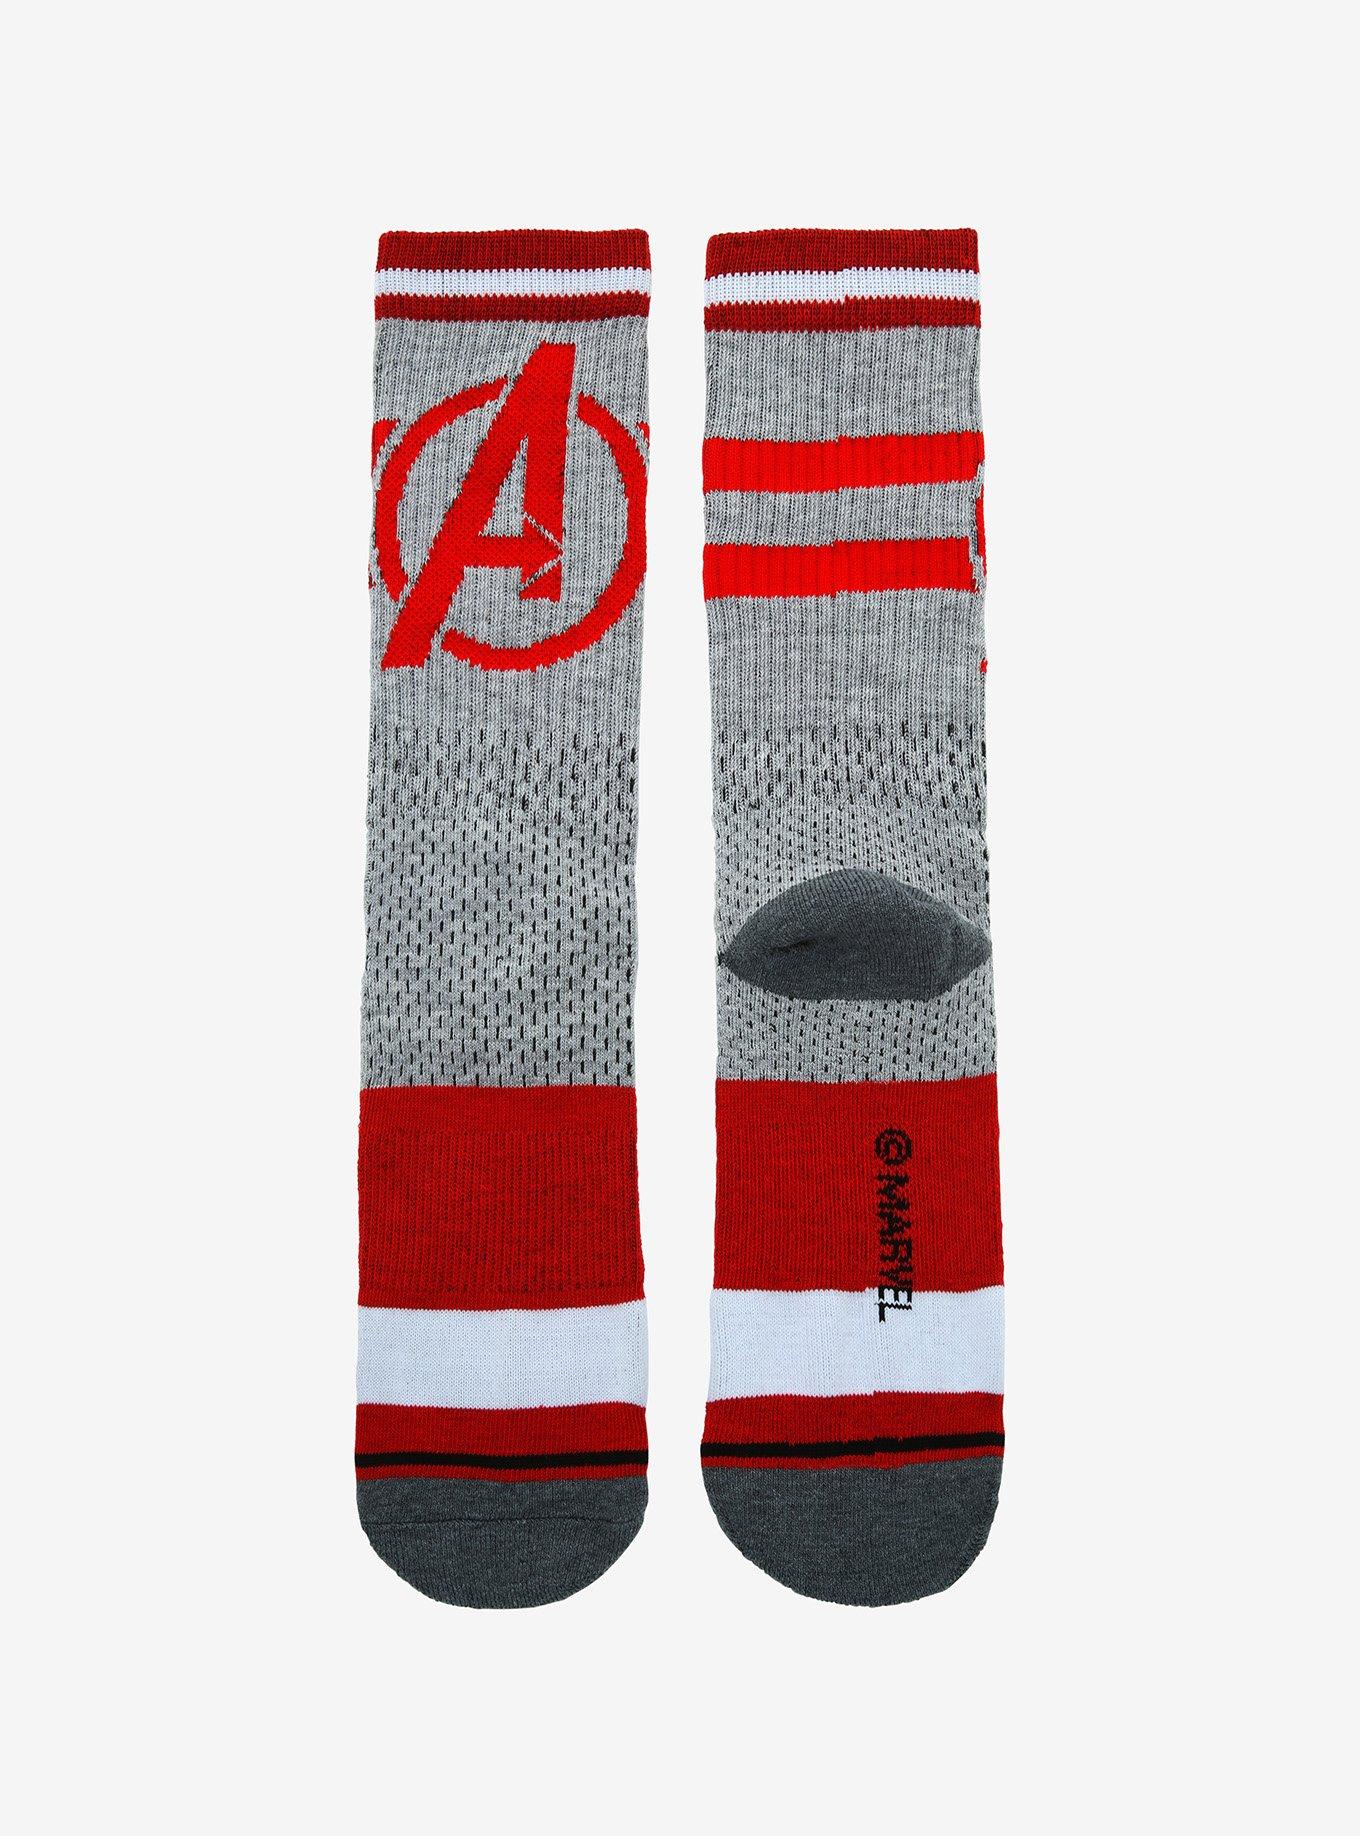 Marvel The Avengers Logo Grey & Red Crew Socks, , alternate